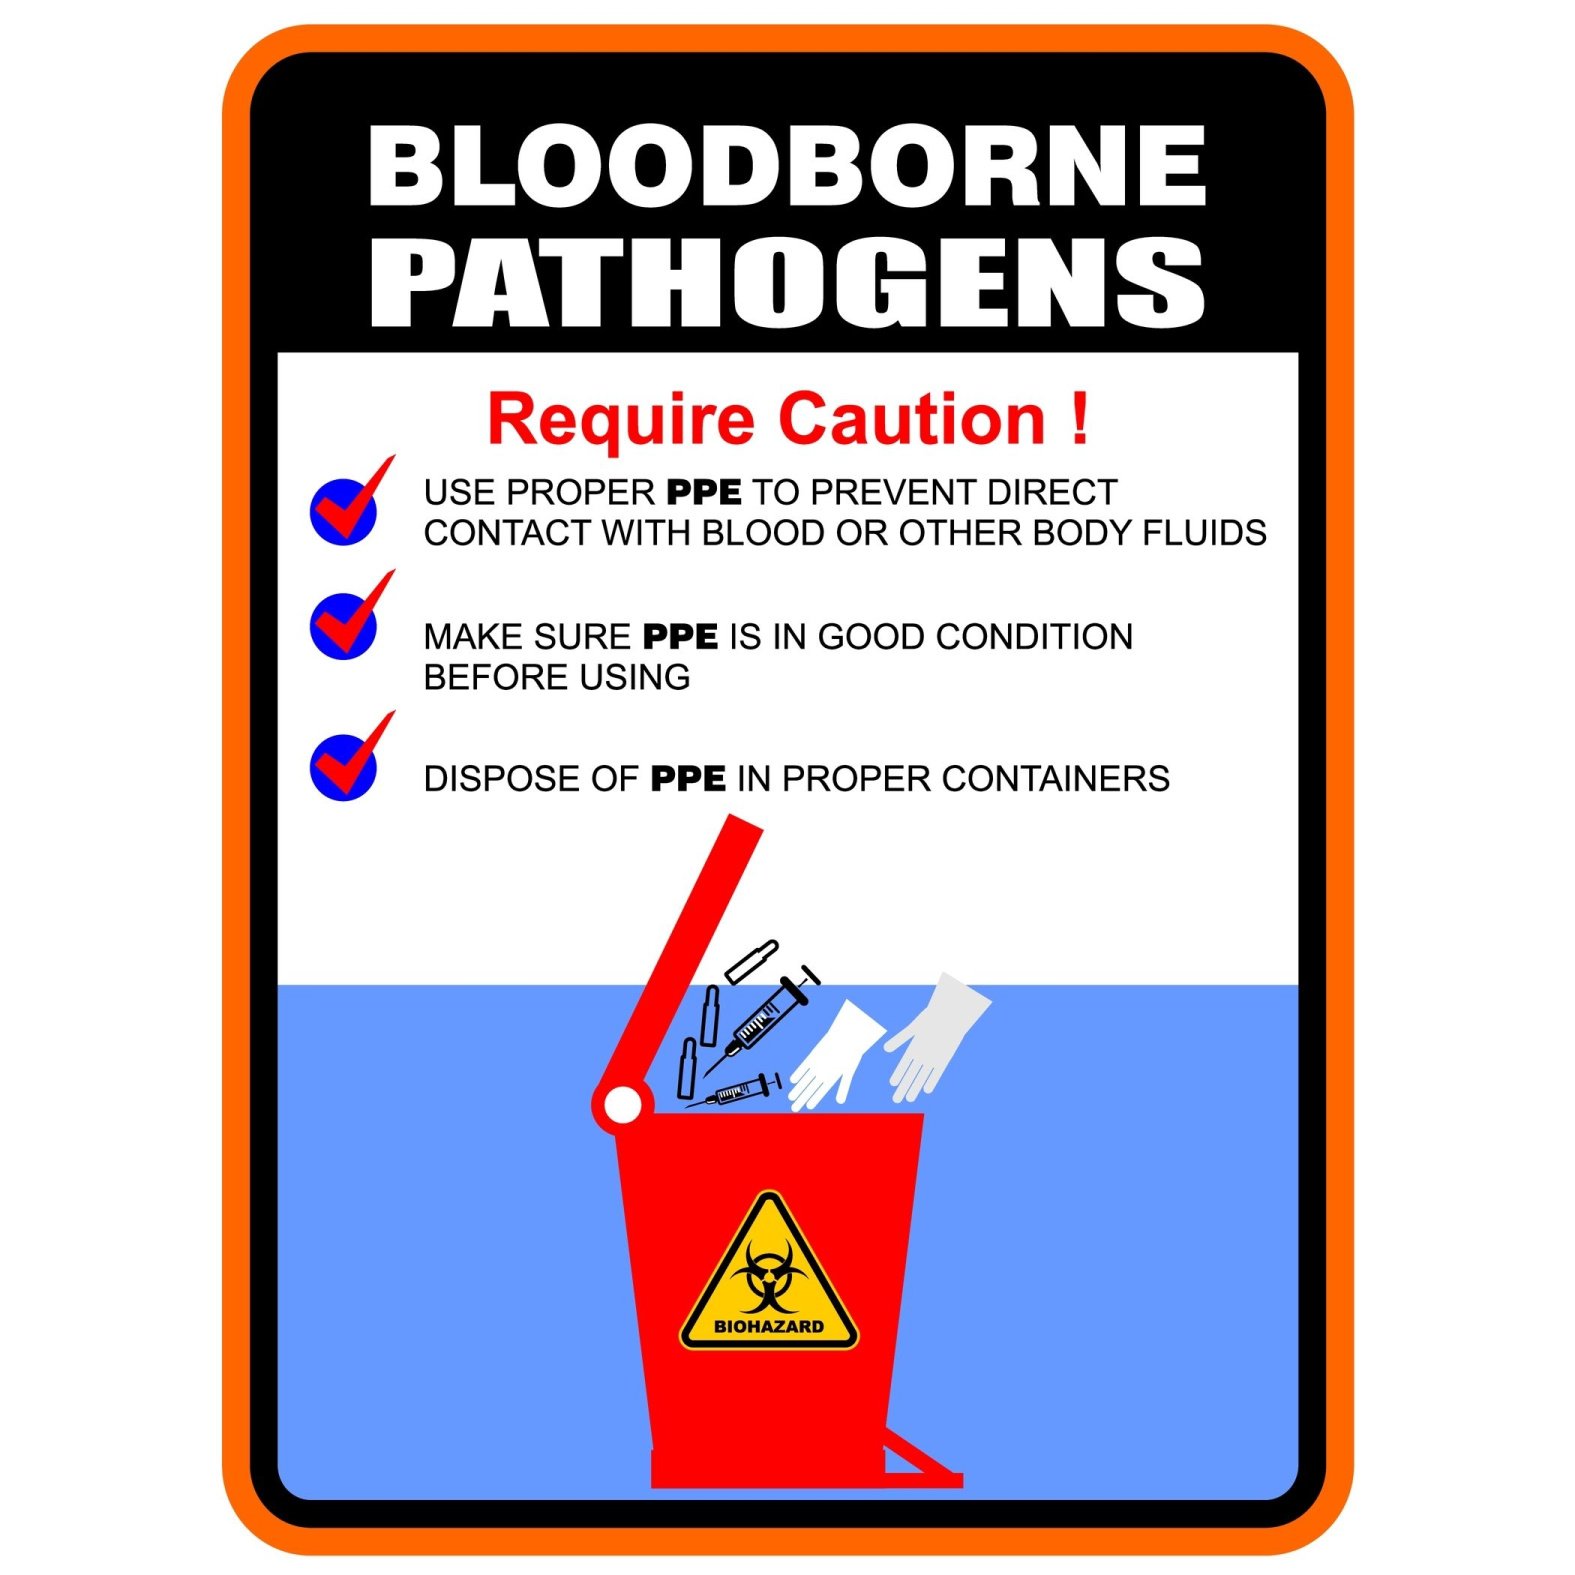 Bloodborne Pathogen Training